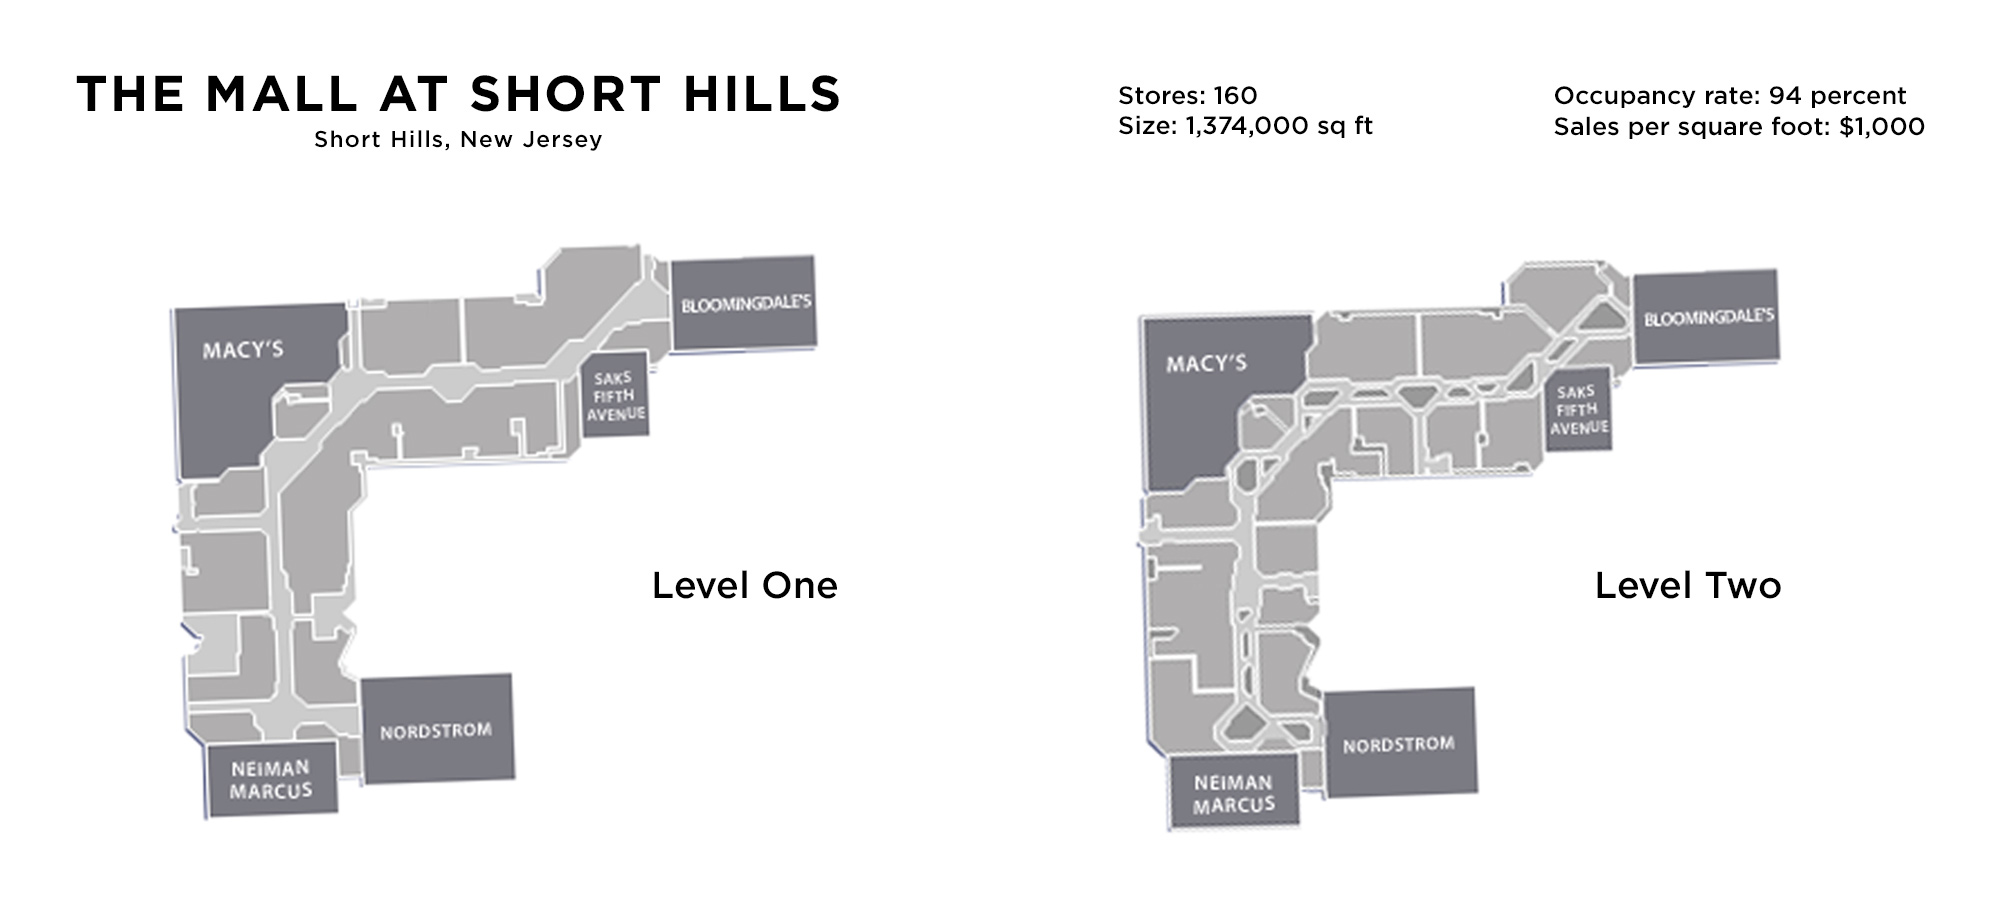 short hills mall map October 2013 Digital Text Portfolio short hills mall map